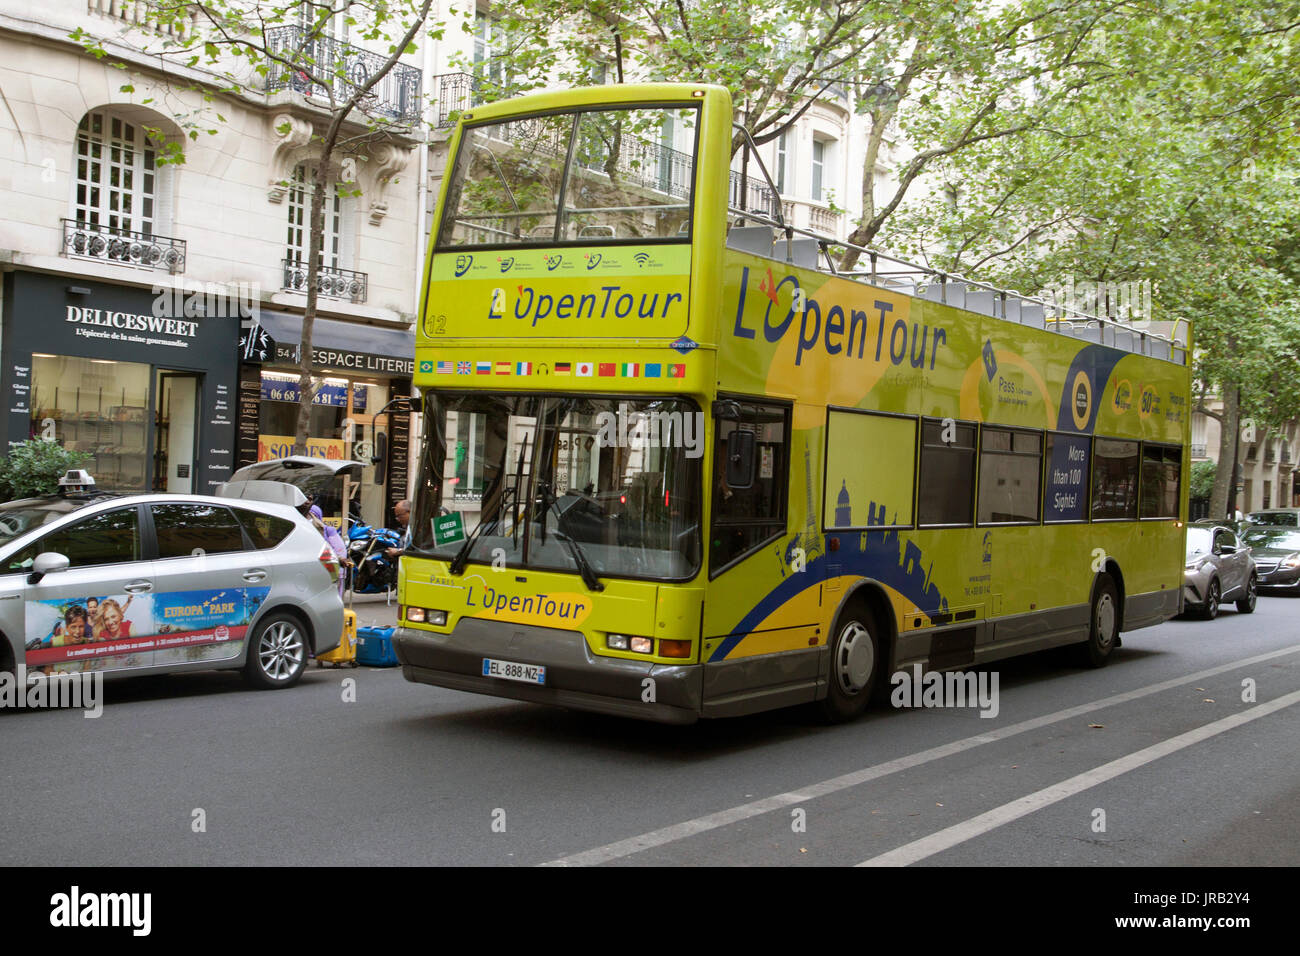 PARIJS , FRANKRIJK - JULY 23 ,2017: Tourist Bus in Paris, France  Paris Open Tour is a touristic bus service that shows the city with an audio guide. Stock Photo